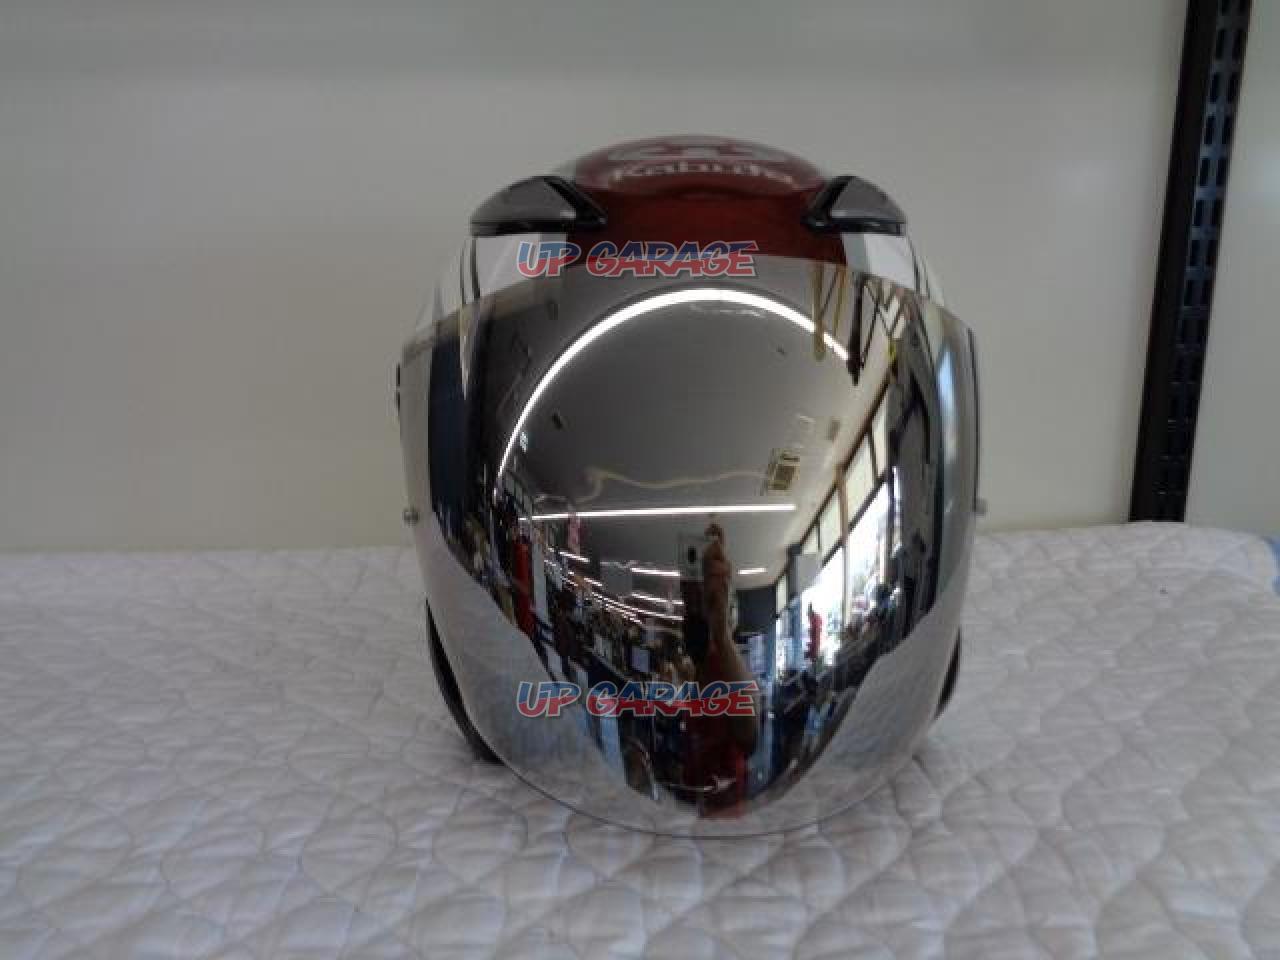 OGK AVAND2 ジェットヘルメット Lサイズ 白赤 シルバーミラーシールド